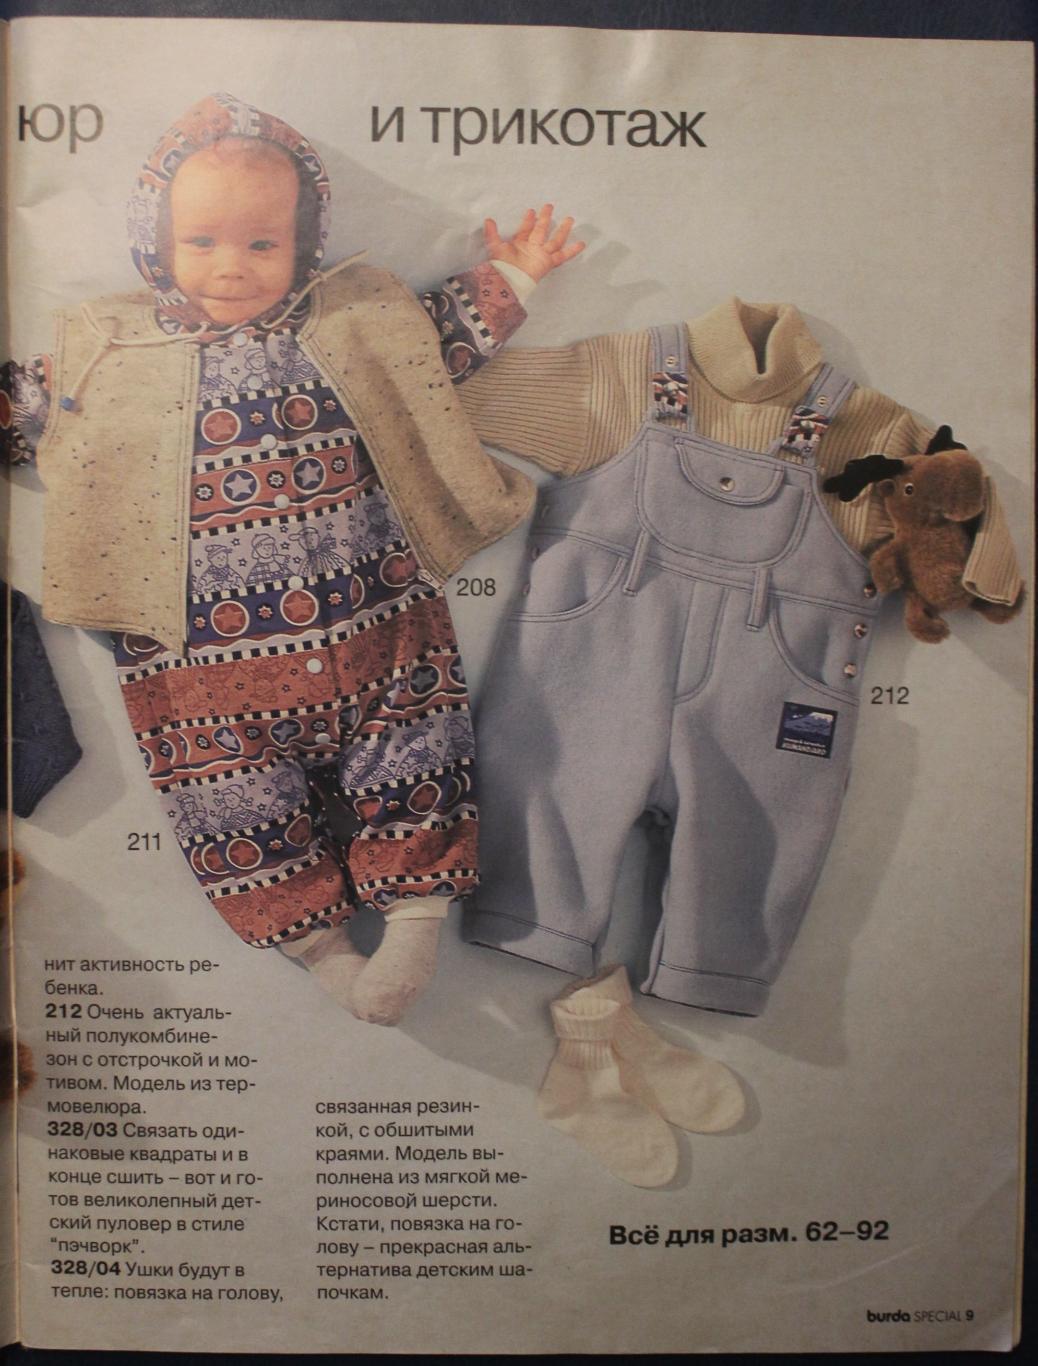 Журнал Бурда. Наш малыш осень/зима 1995 3